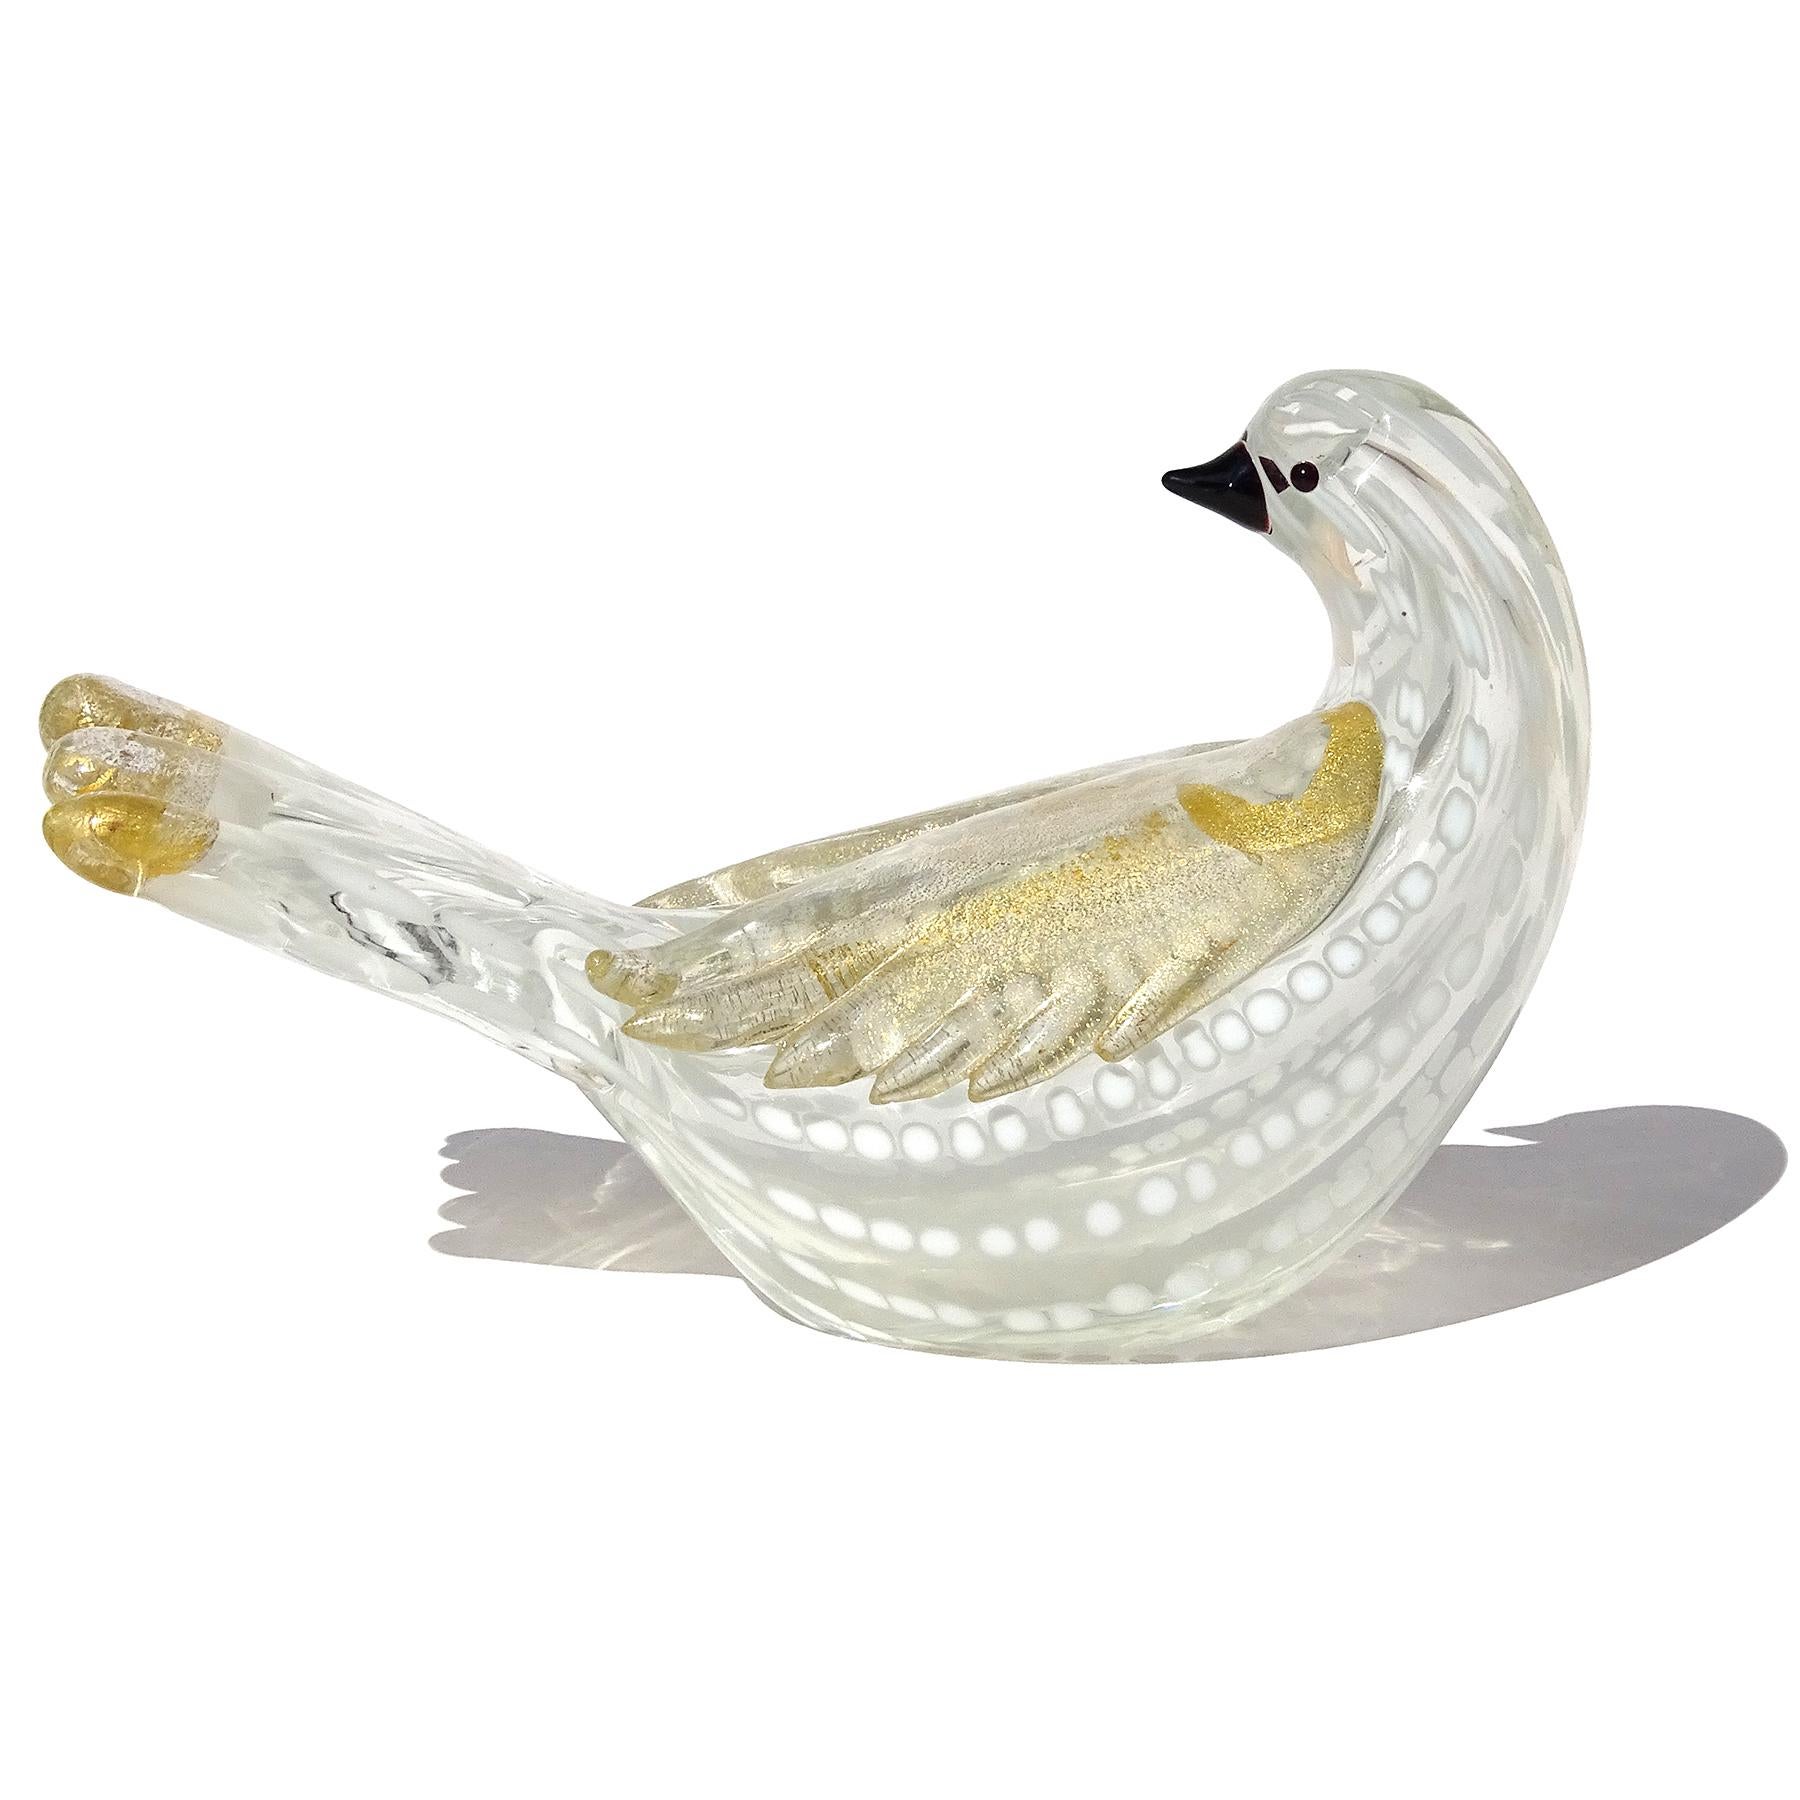 Schöne Vintage Murano mundgeblasenen weißen Flecken und Goldflecken italienische Kunst Glasfigur / Skulptur. Geschaffen nach dem Vorbild der Firma Barovier e Toso. Der Vogel ist mit einem Muster aus weißen Punkten auf einem klaren Glaskörper